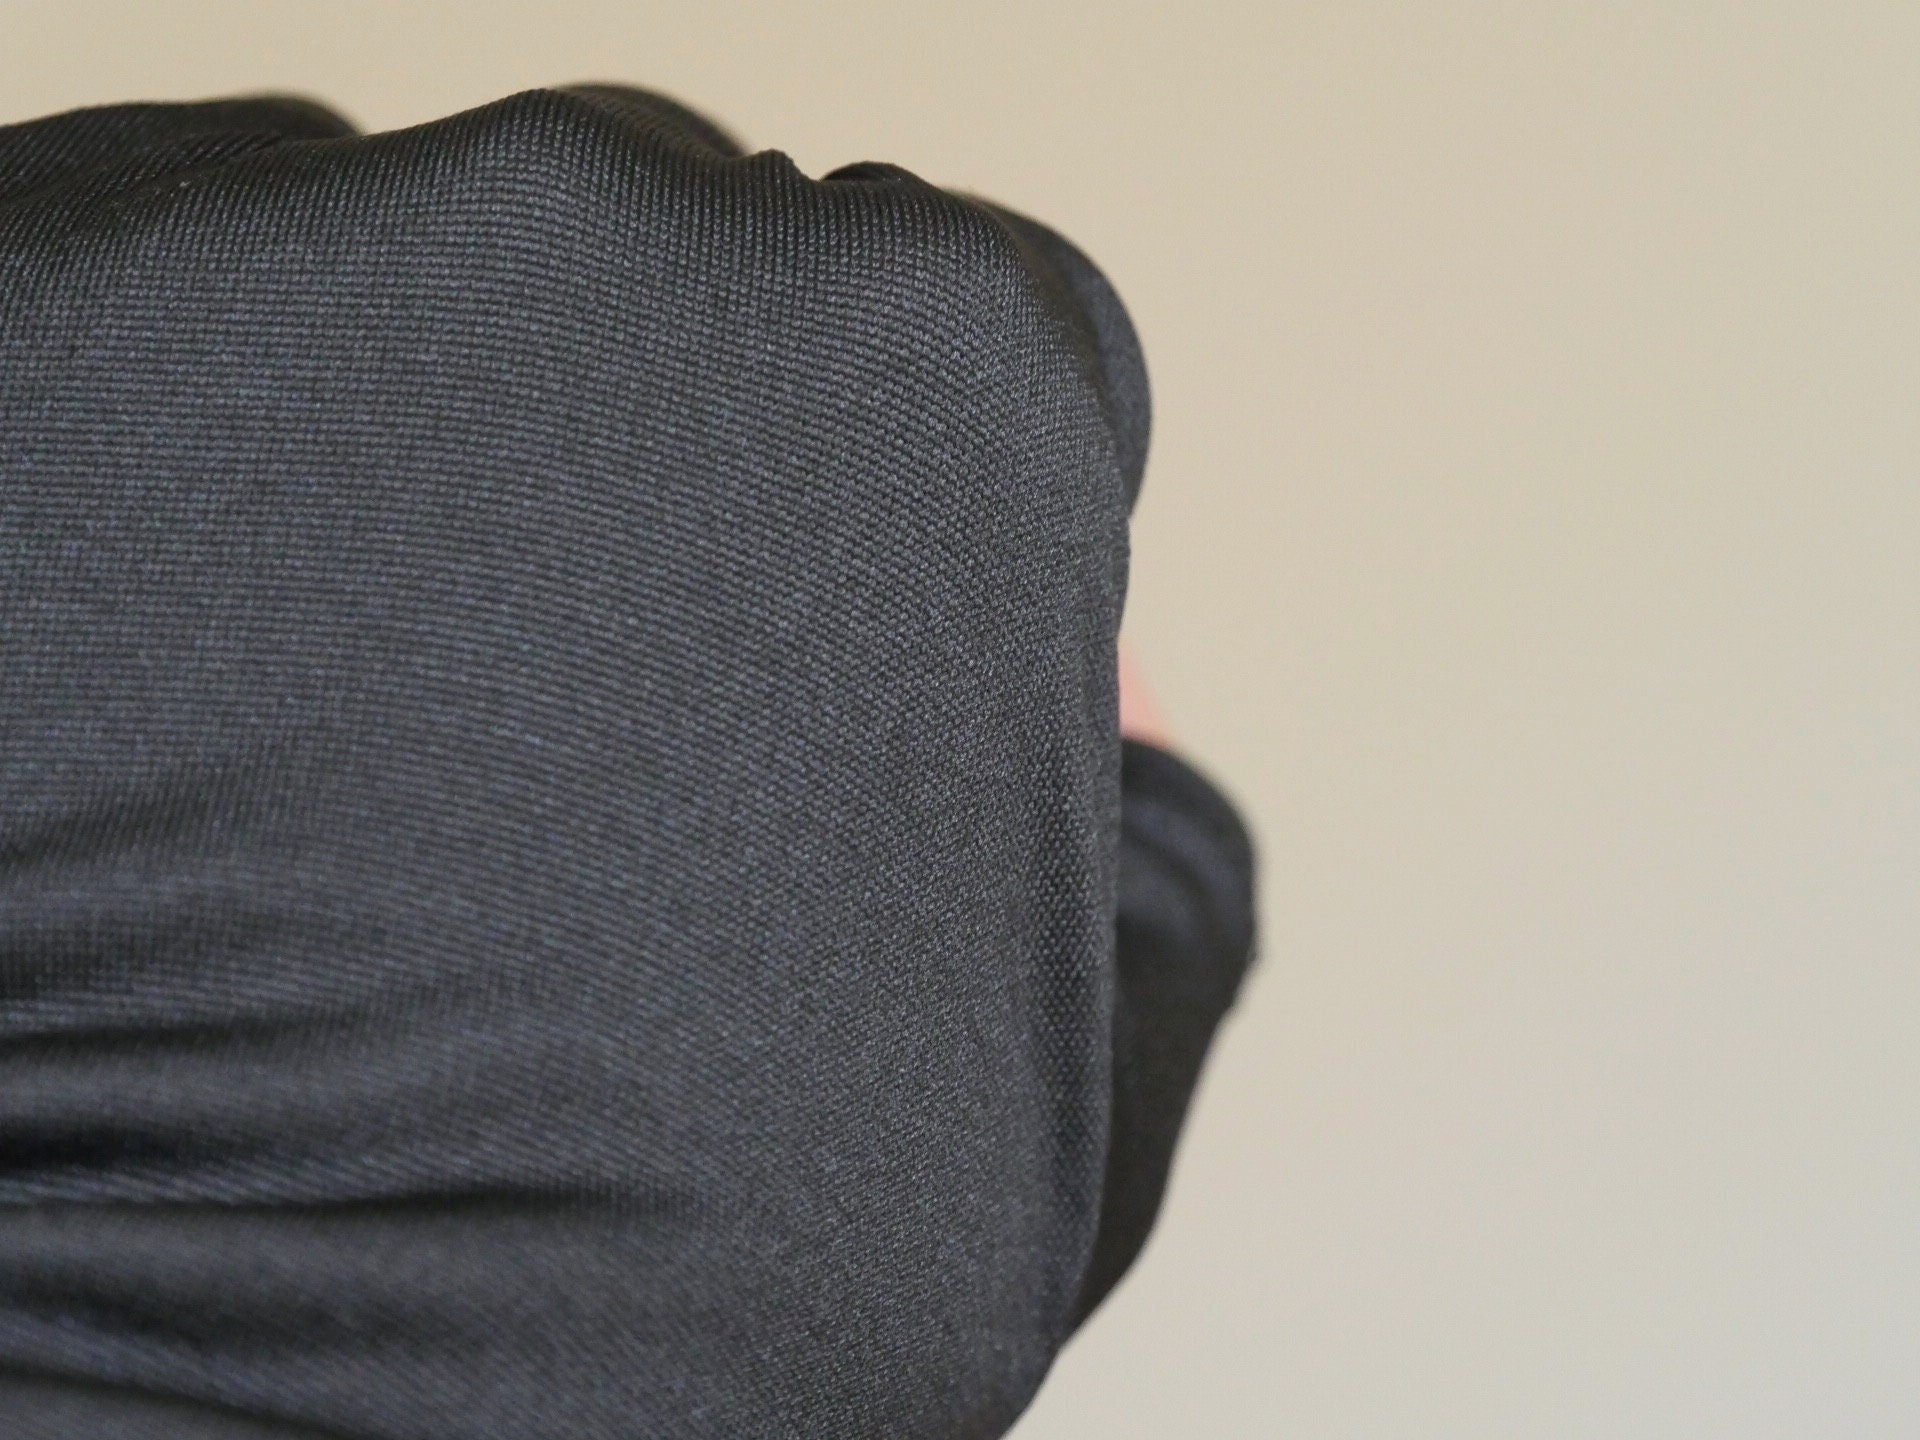 1 pair UV Resistant Knitted Fingerless Gloves